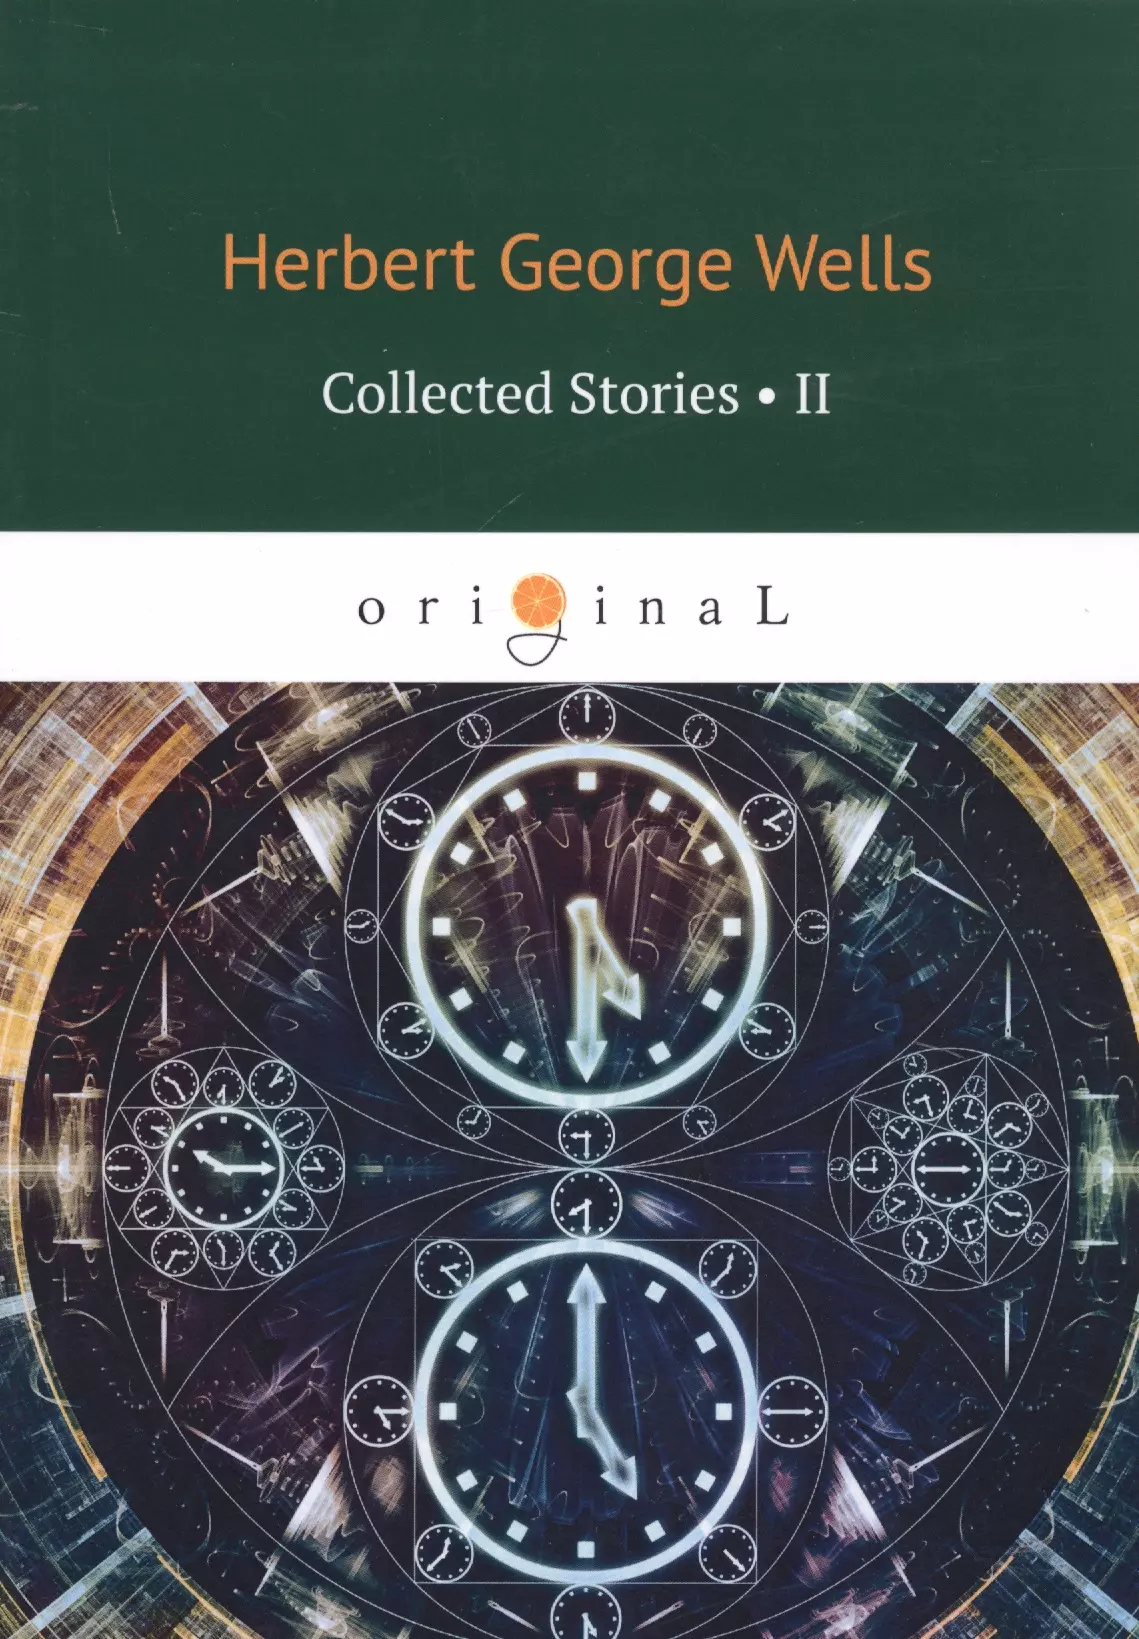 Уэллс Герберт Джордж - Collected Stories II = Сборник рассказов 2: на английском языке